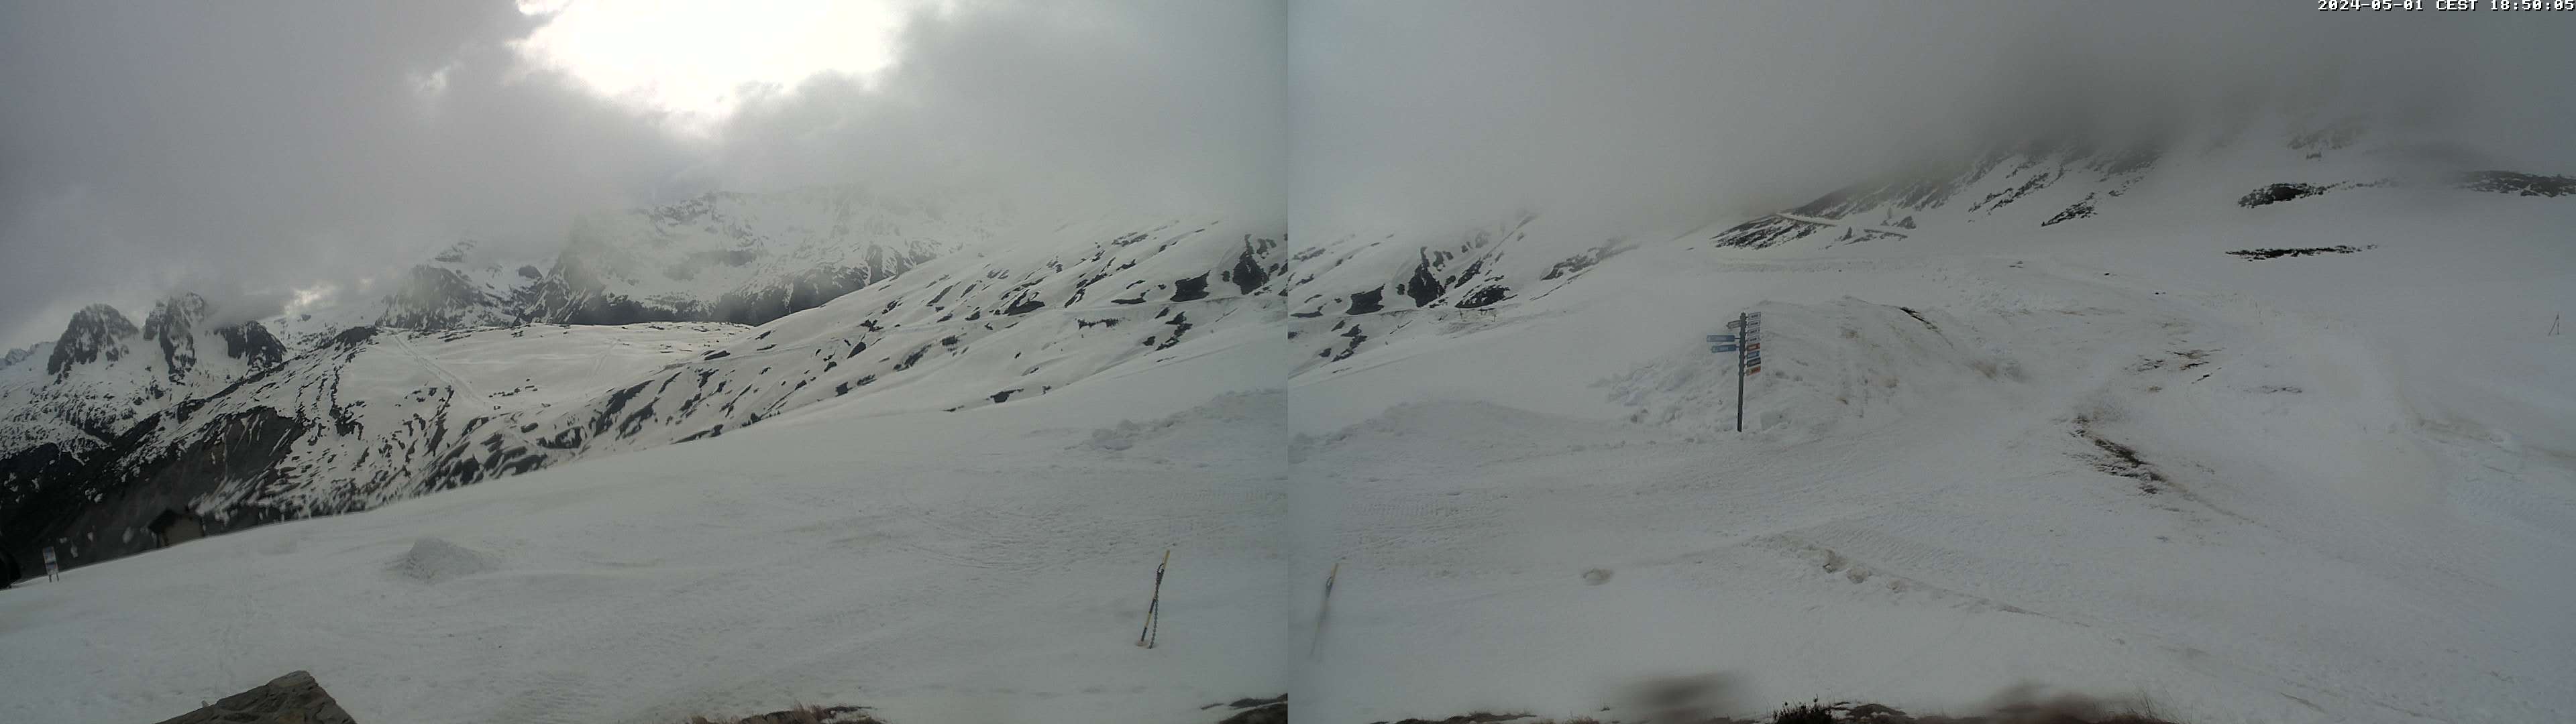 La Balme Ski Resort Webcam in Chamonix